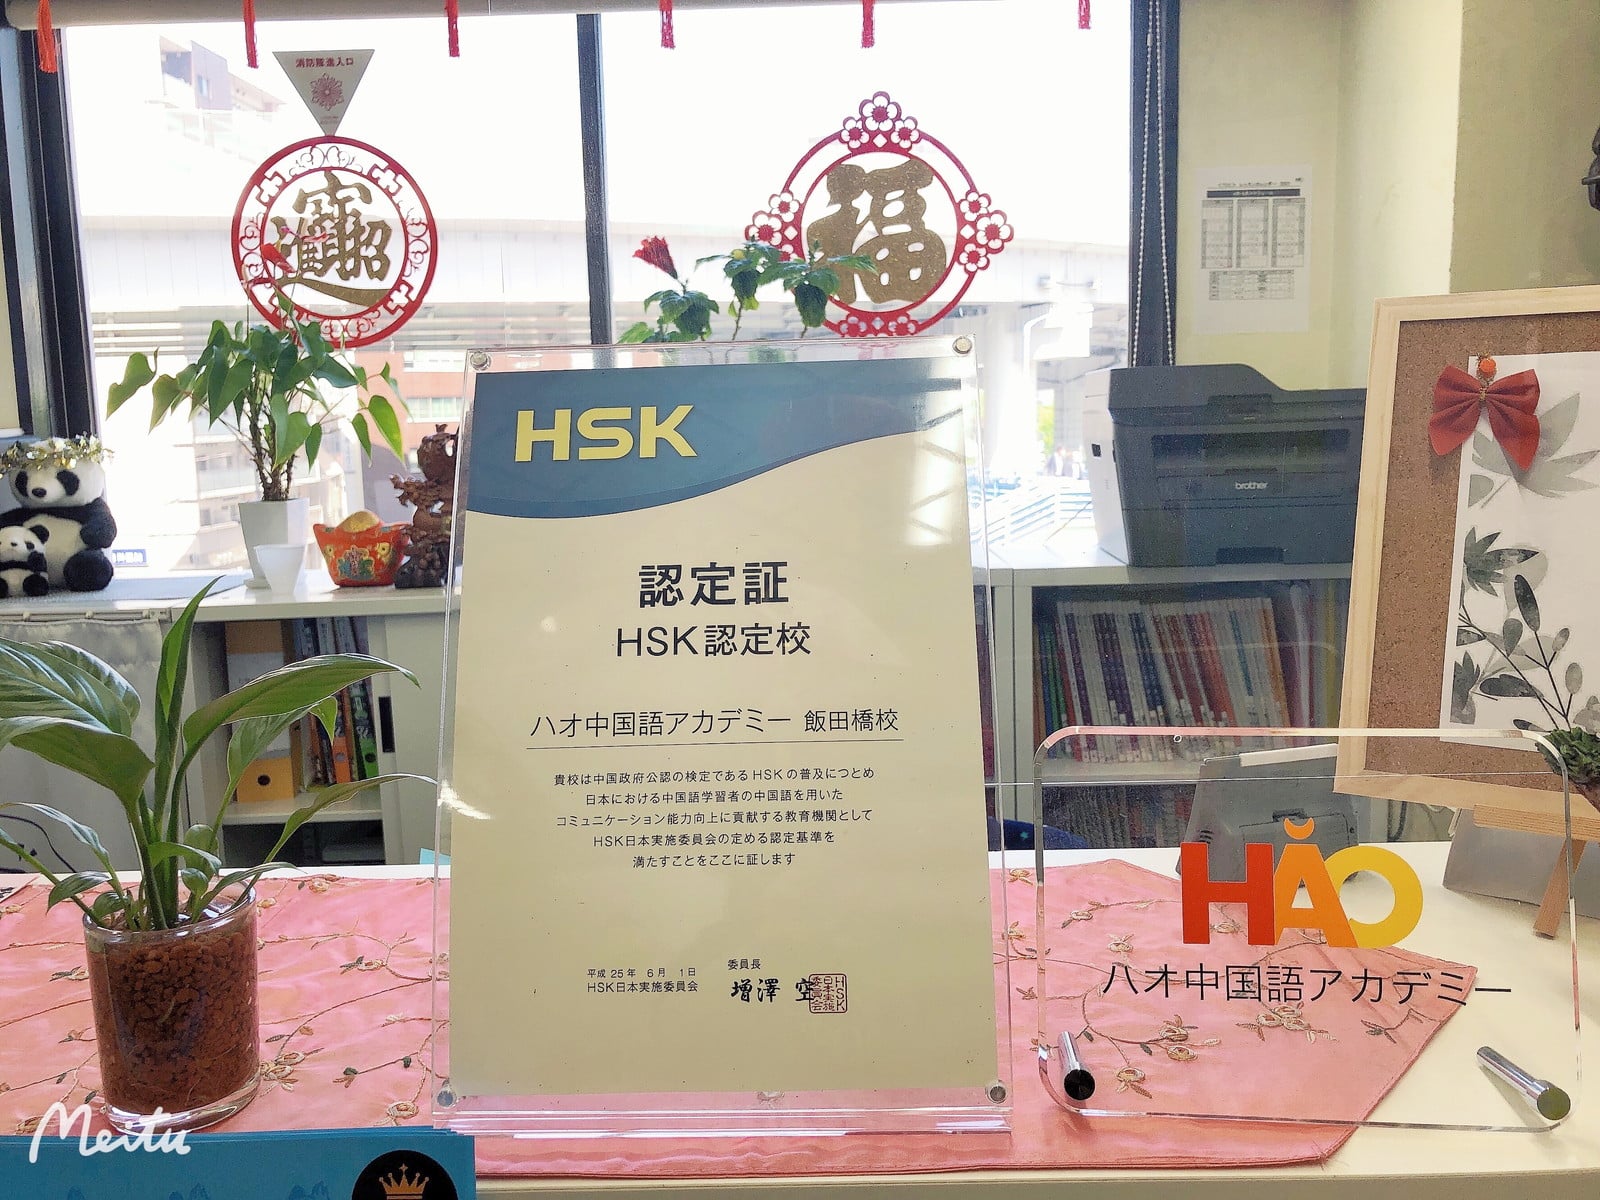 HSK事務局公認校です。